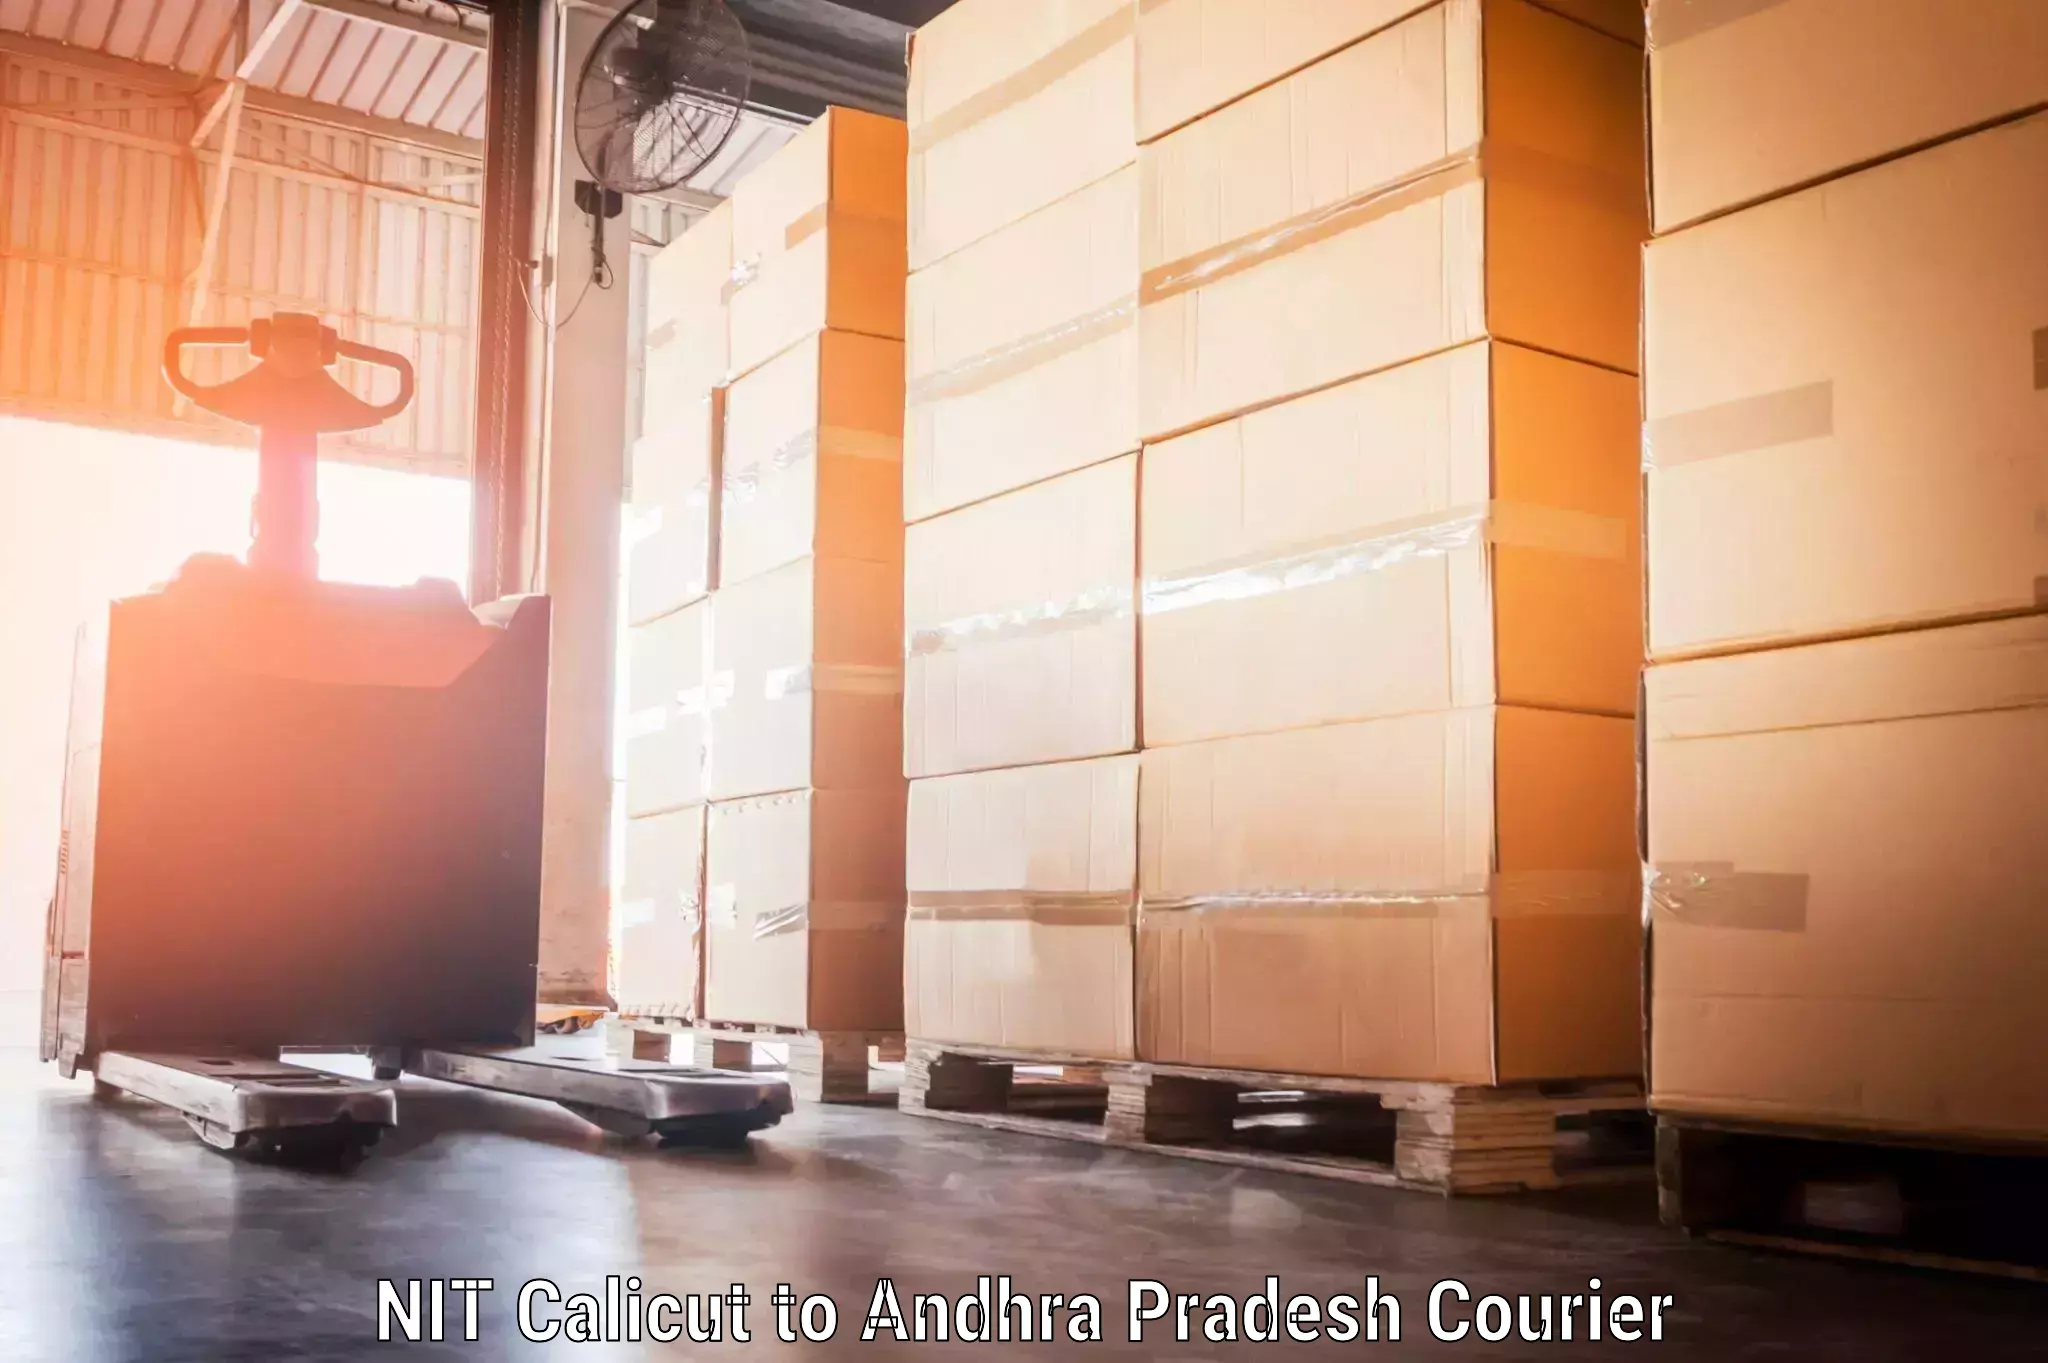 Luggage delivery estimate NIT Calicut to Veldurthi